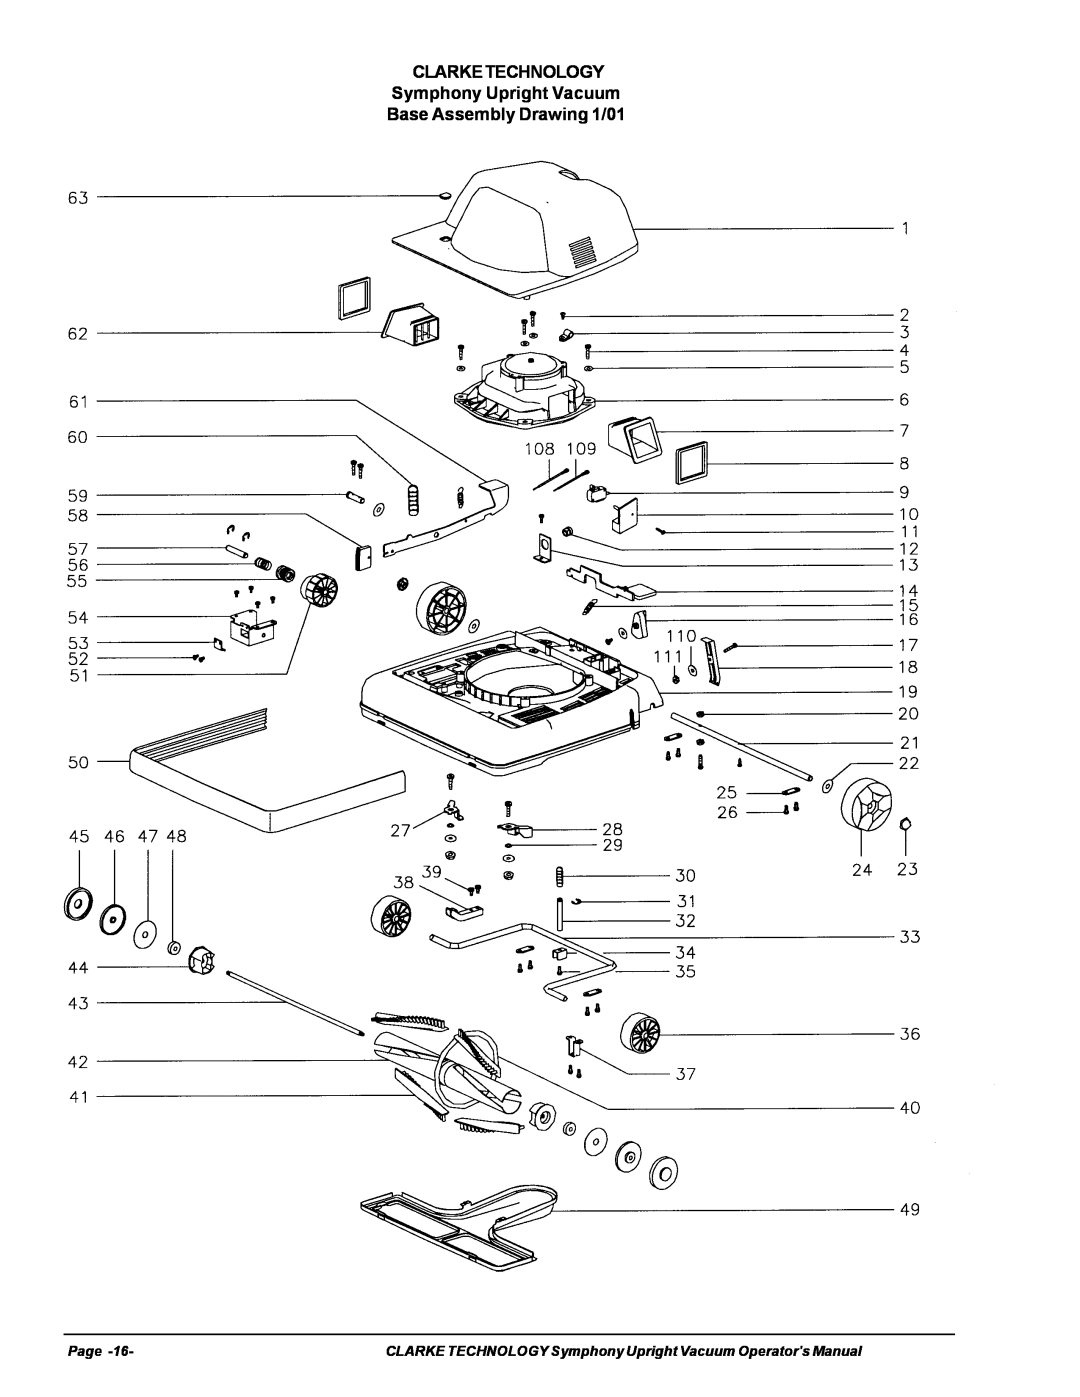 Nilfisk-ALTO S12cc, S16 manual CLARKETECHNOLOGY Symphony Upright Vacuum, Base Assembly Drawing 1/01, Page 